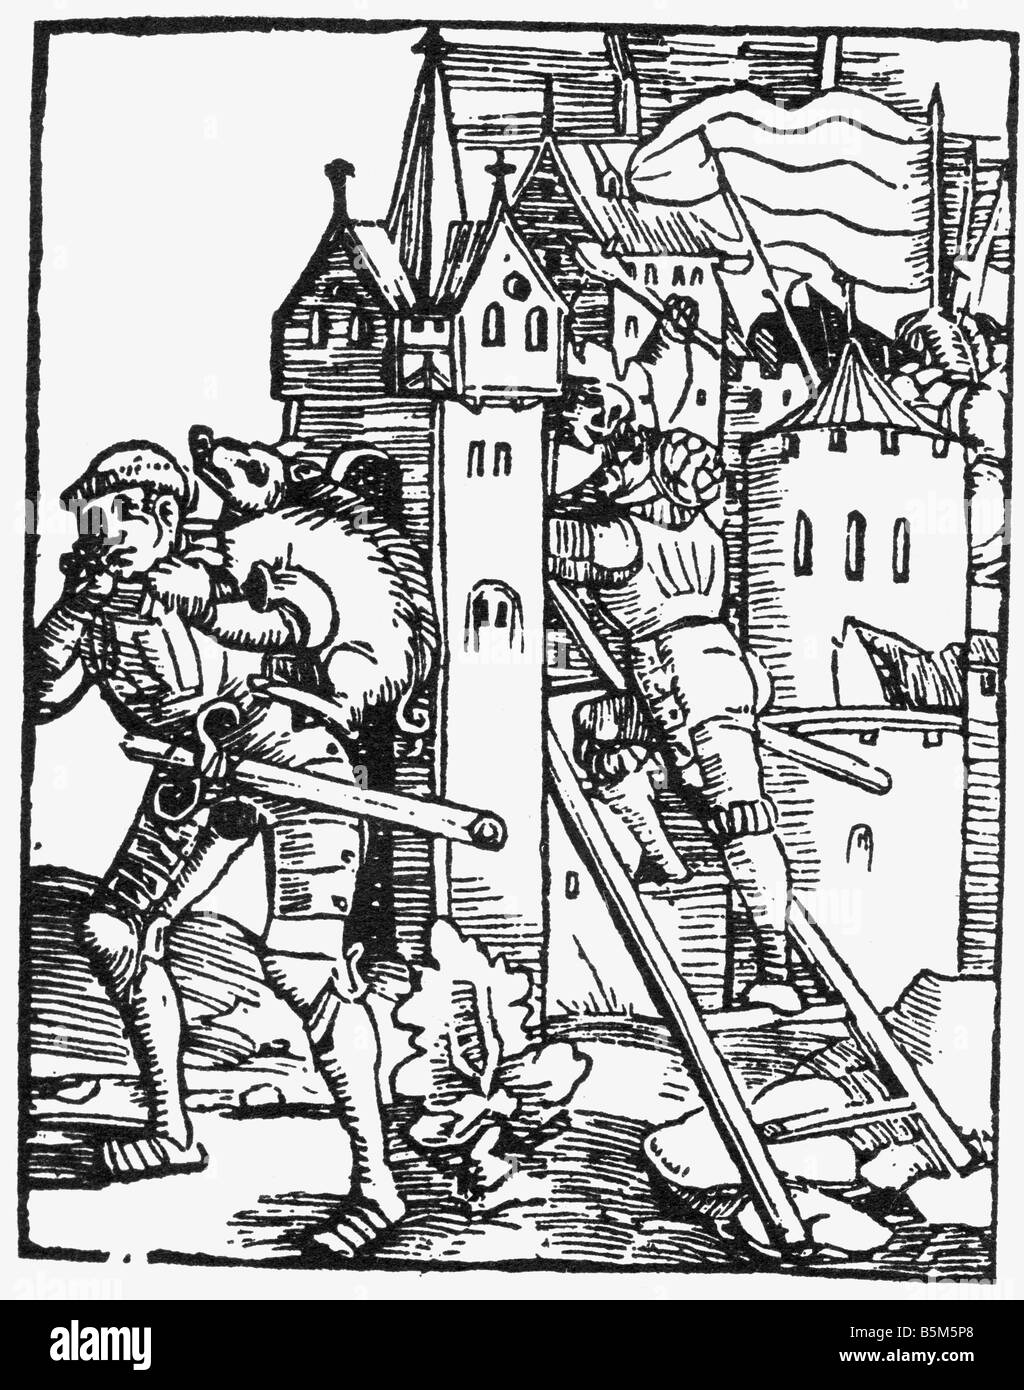 military, Landsknechts, storming a castle, woodcut, 'Von dem großen Lutherischen Narren' von Thomas Murner, 1522, Stock Photo